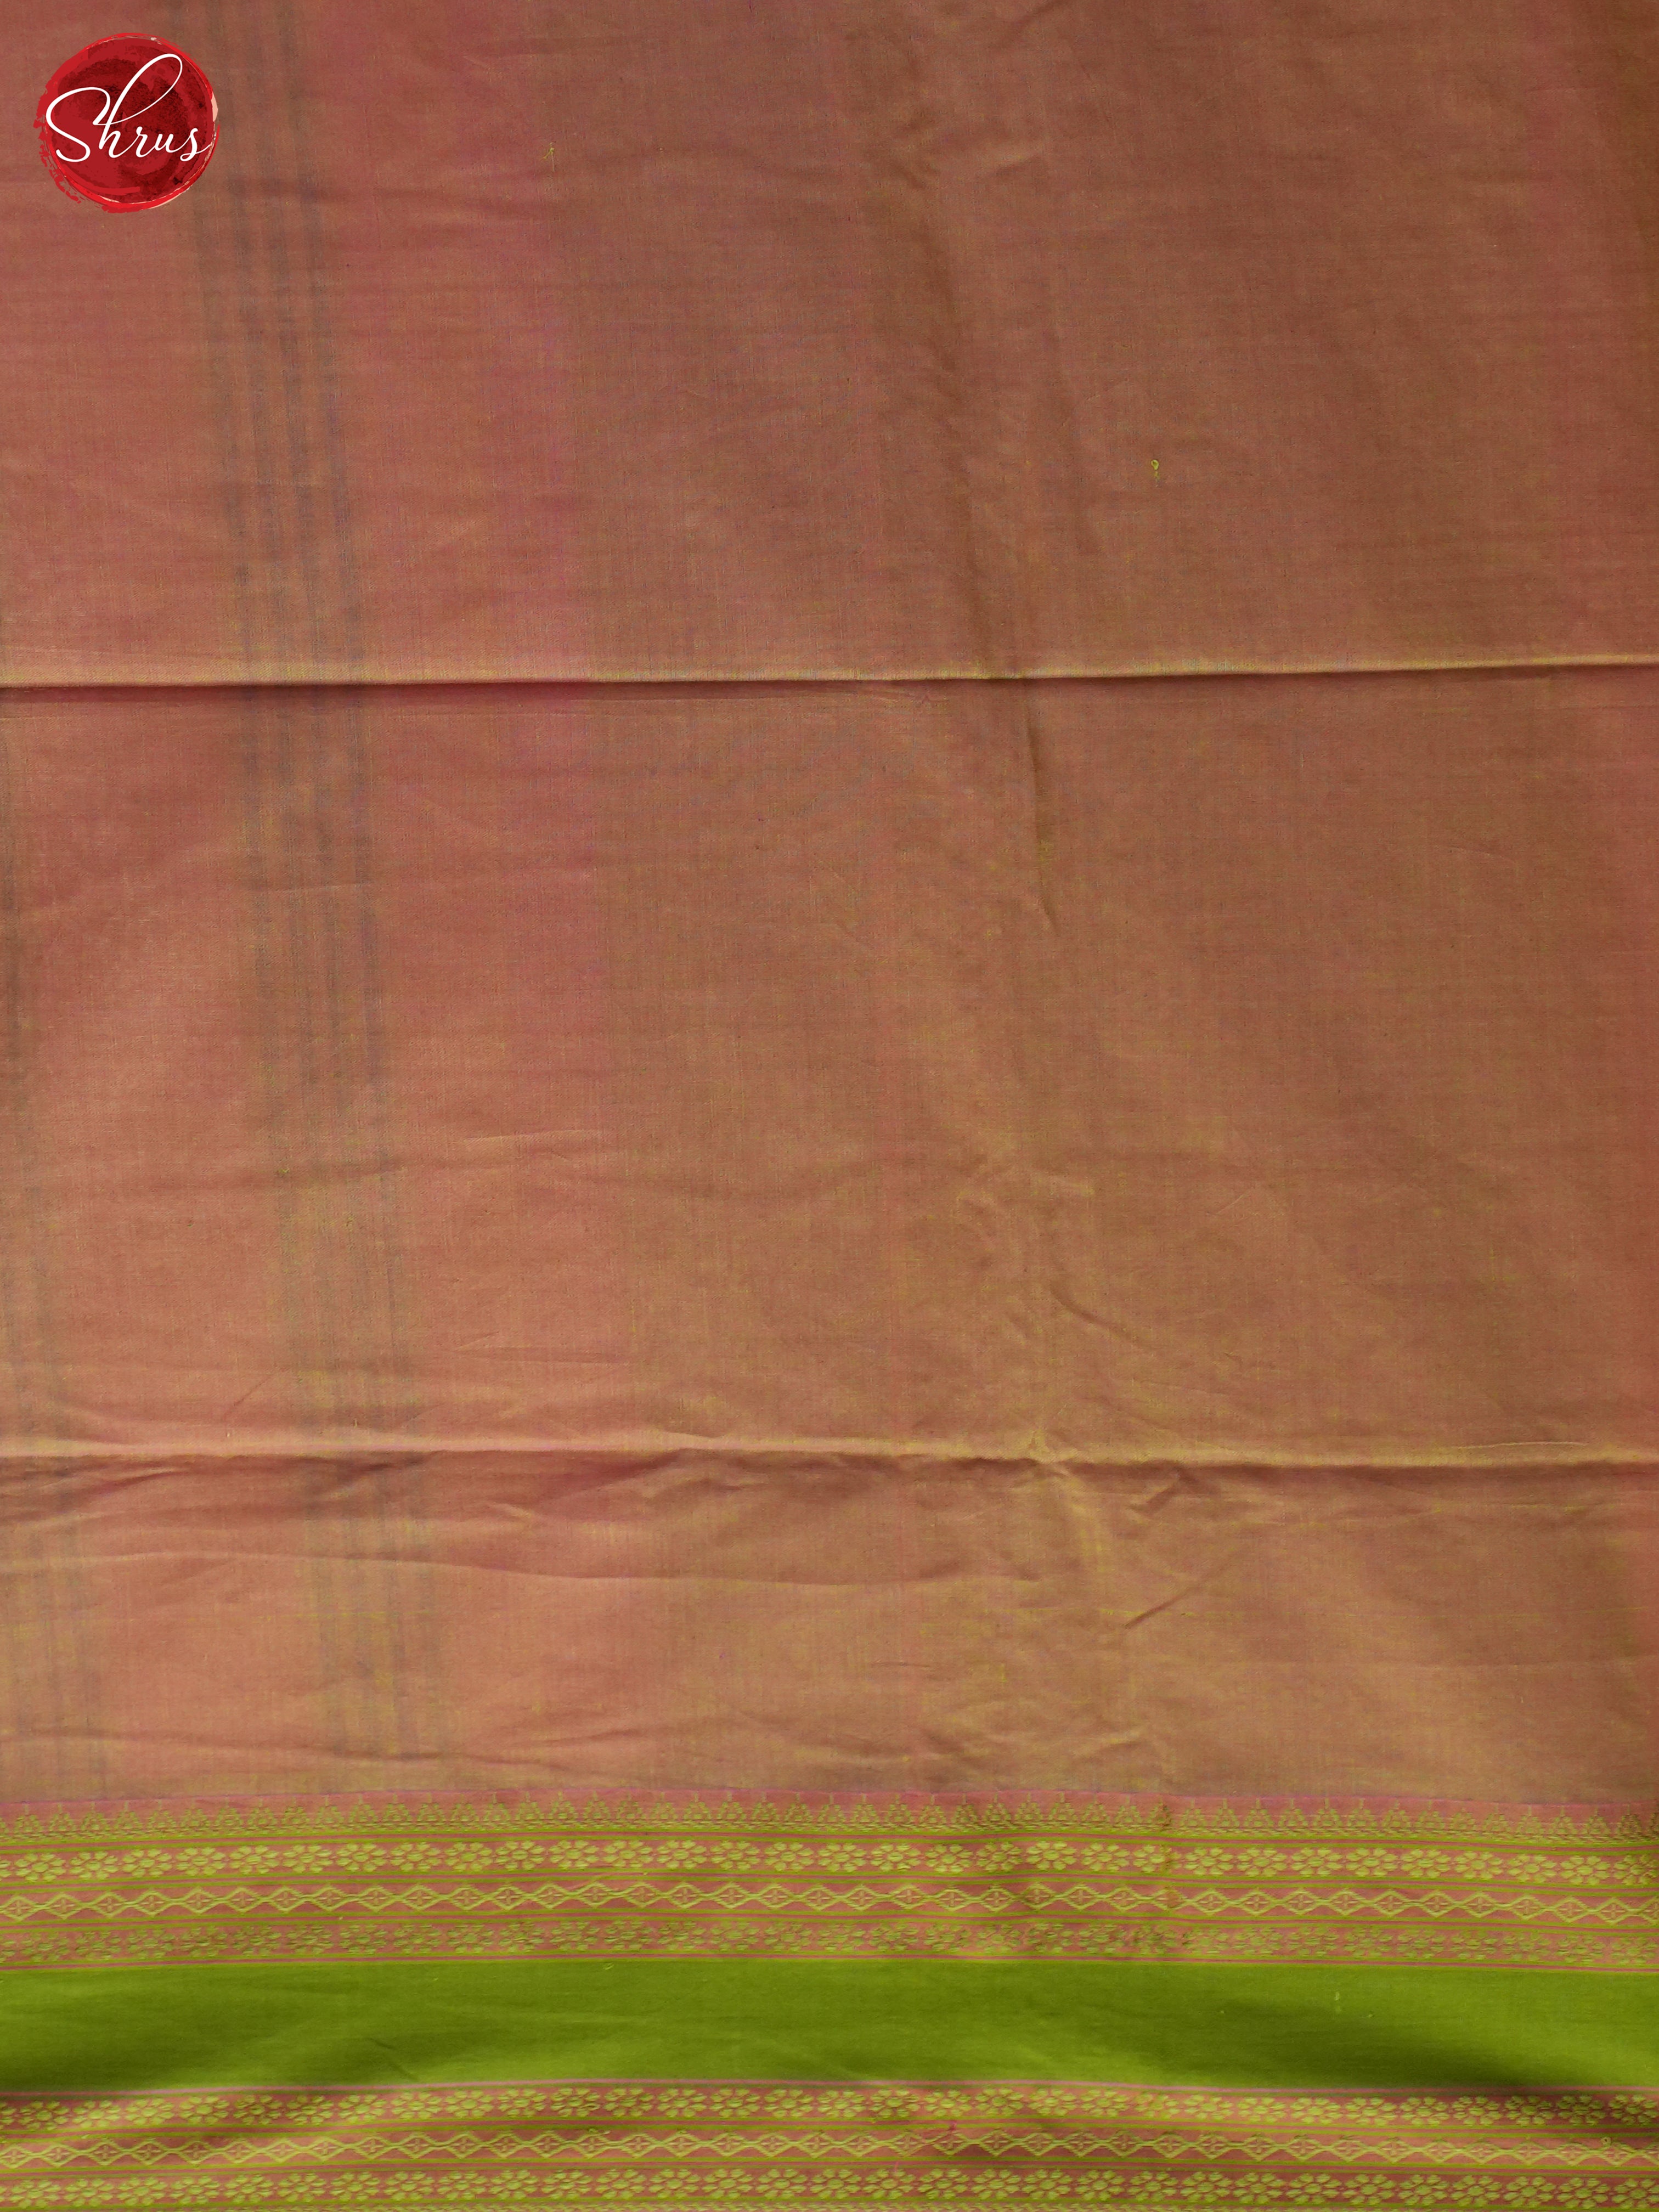 Pink & Brown - Bengal cotton Saree - Shop on ShrusEternity.com